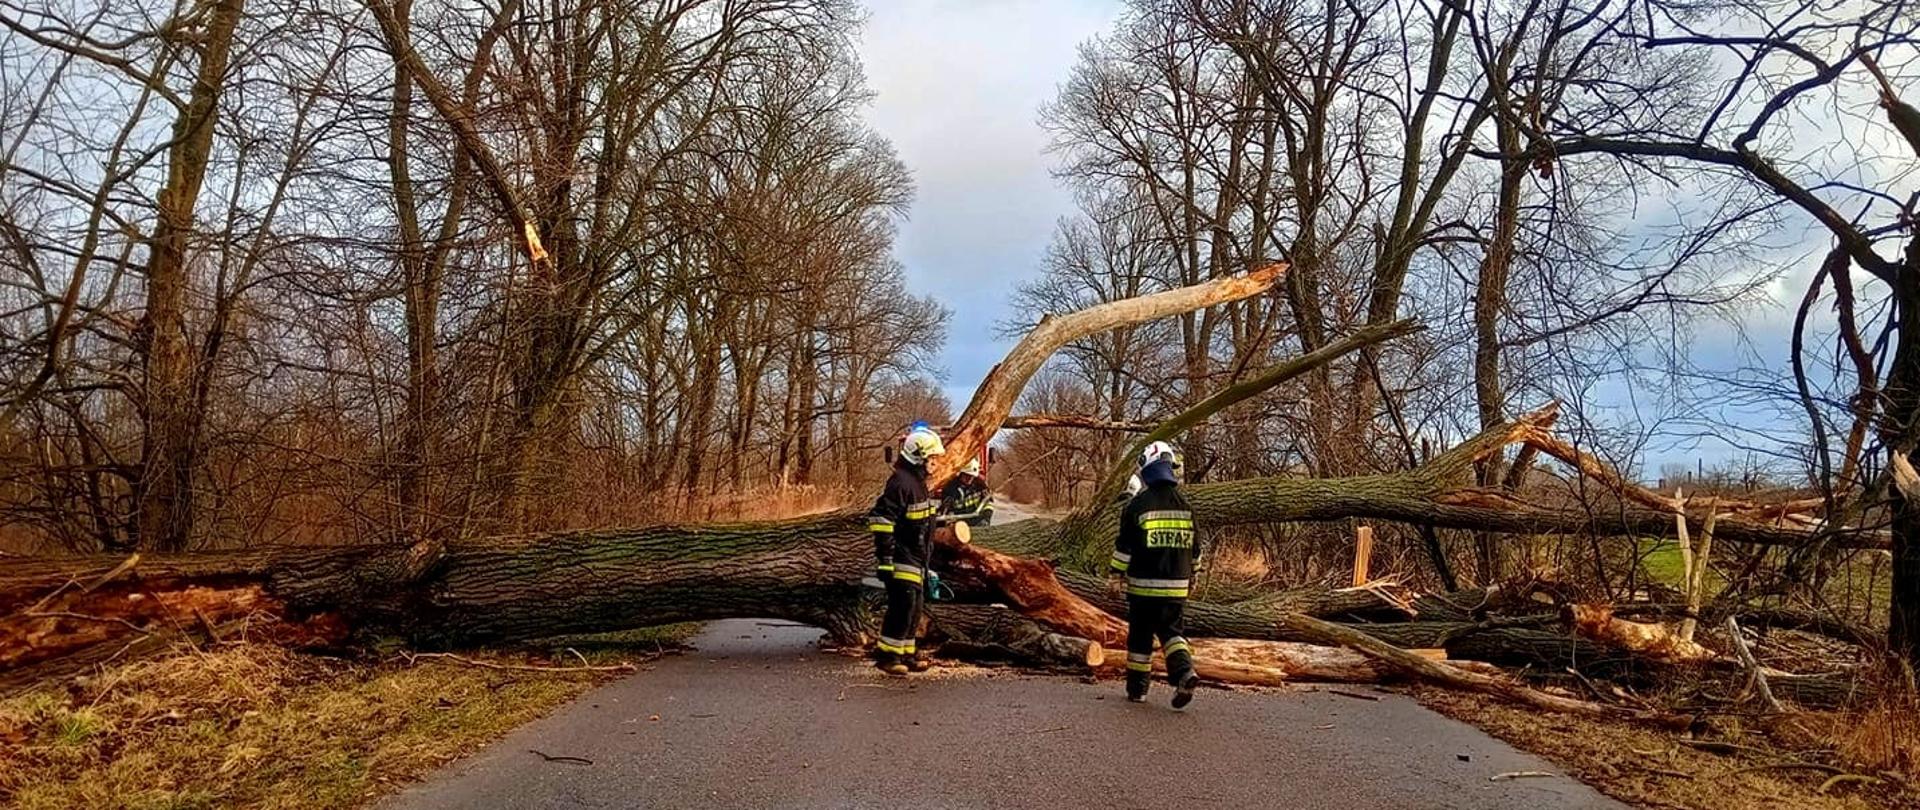 Na zdjęciu trzech strażaków usuwających drzewo leżące w poprzek drogi.